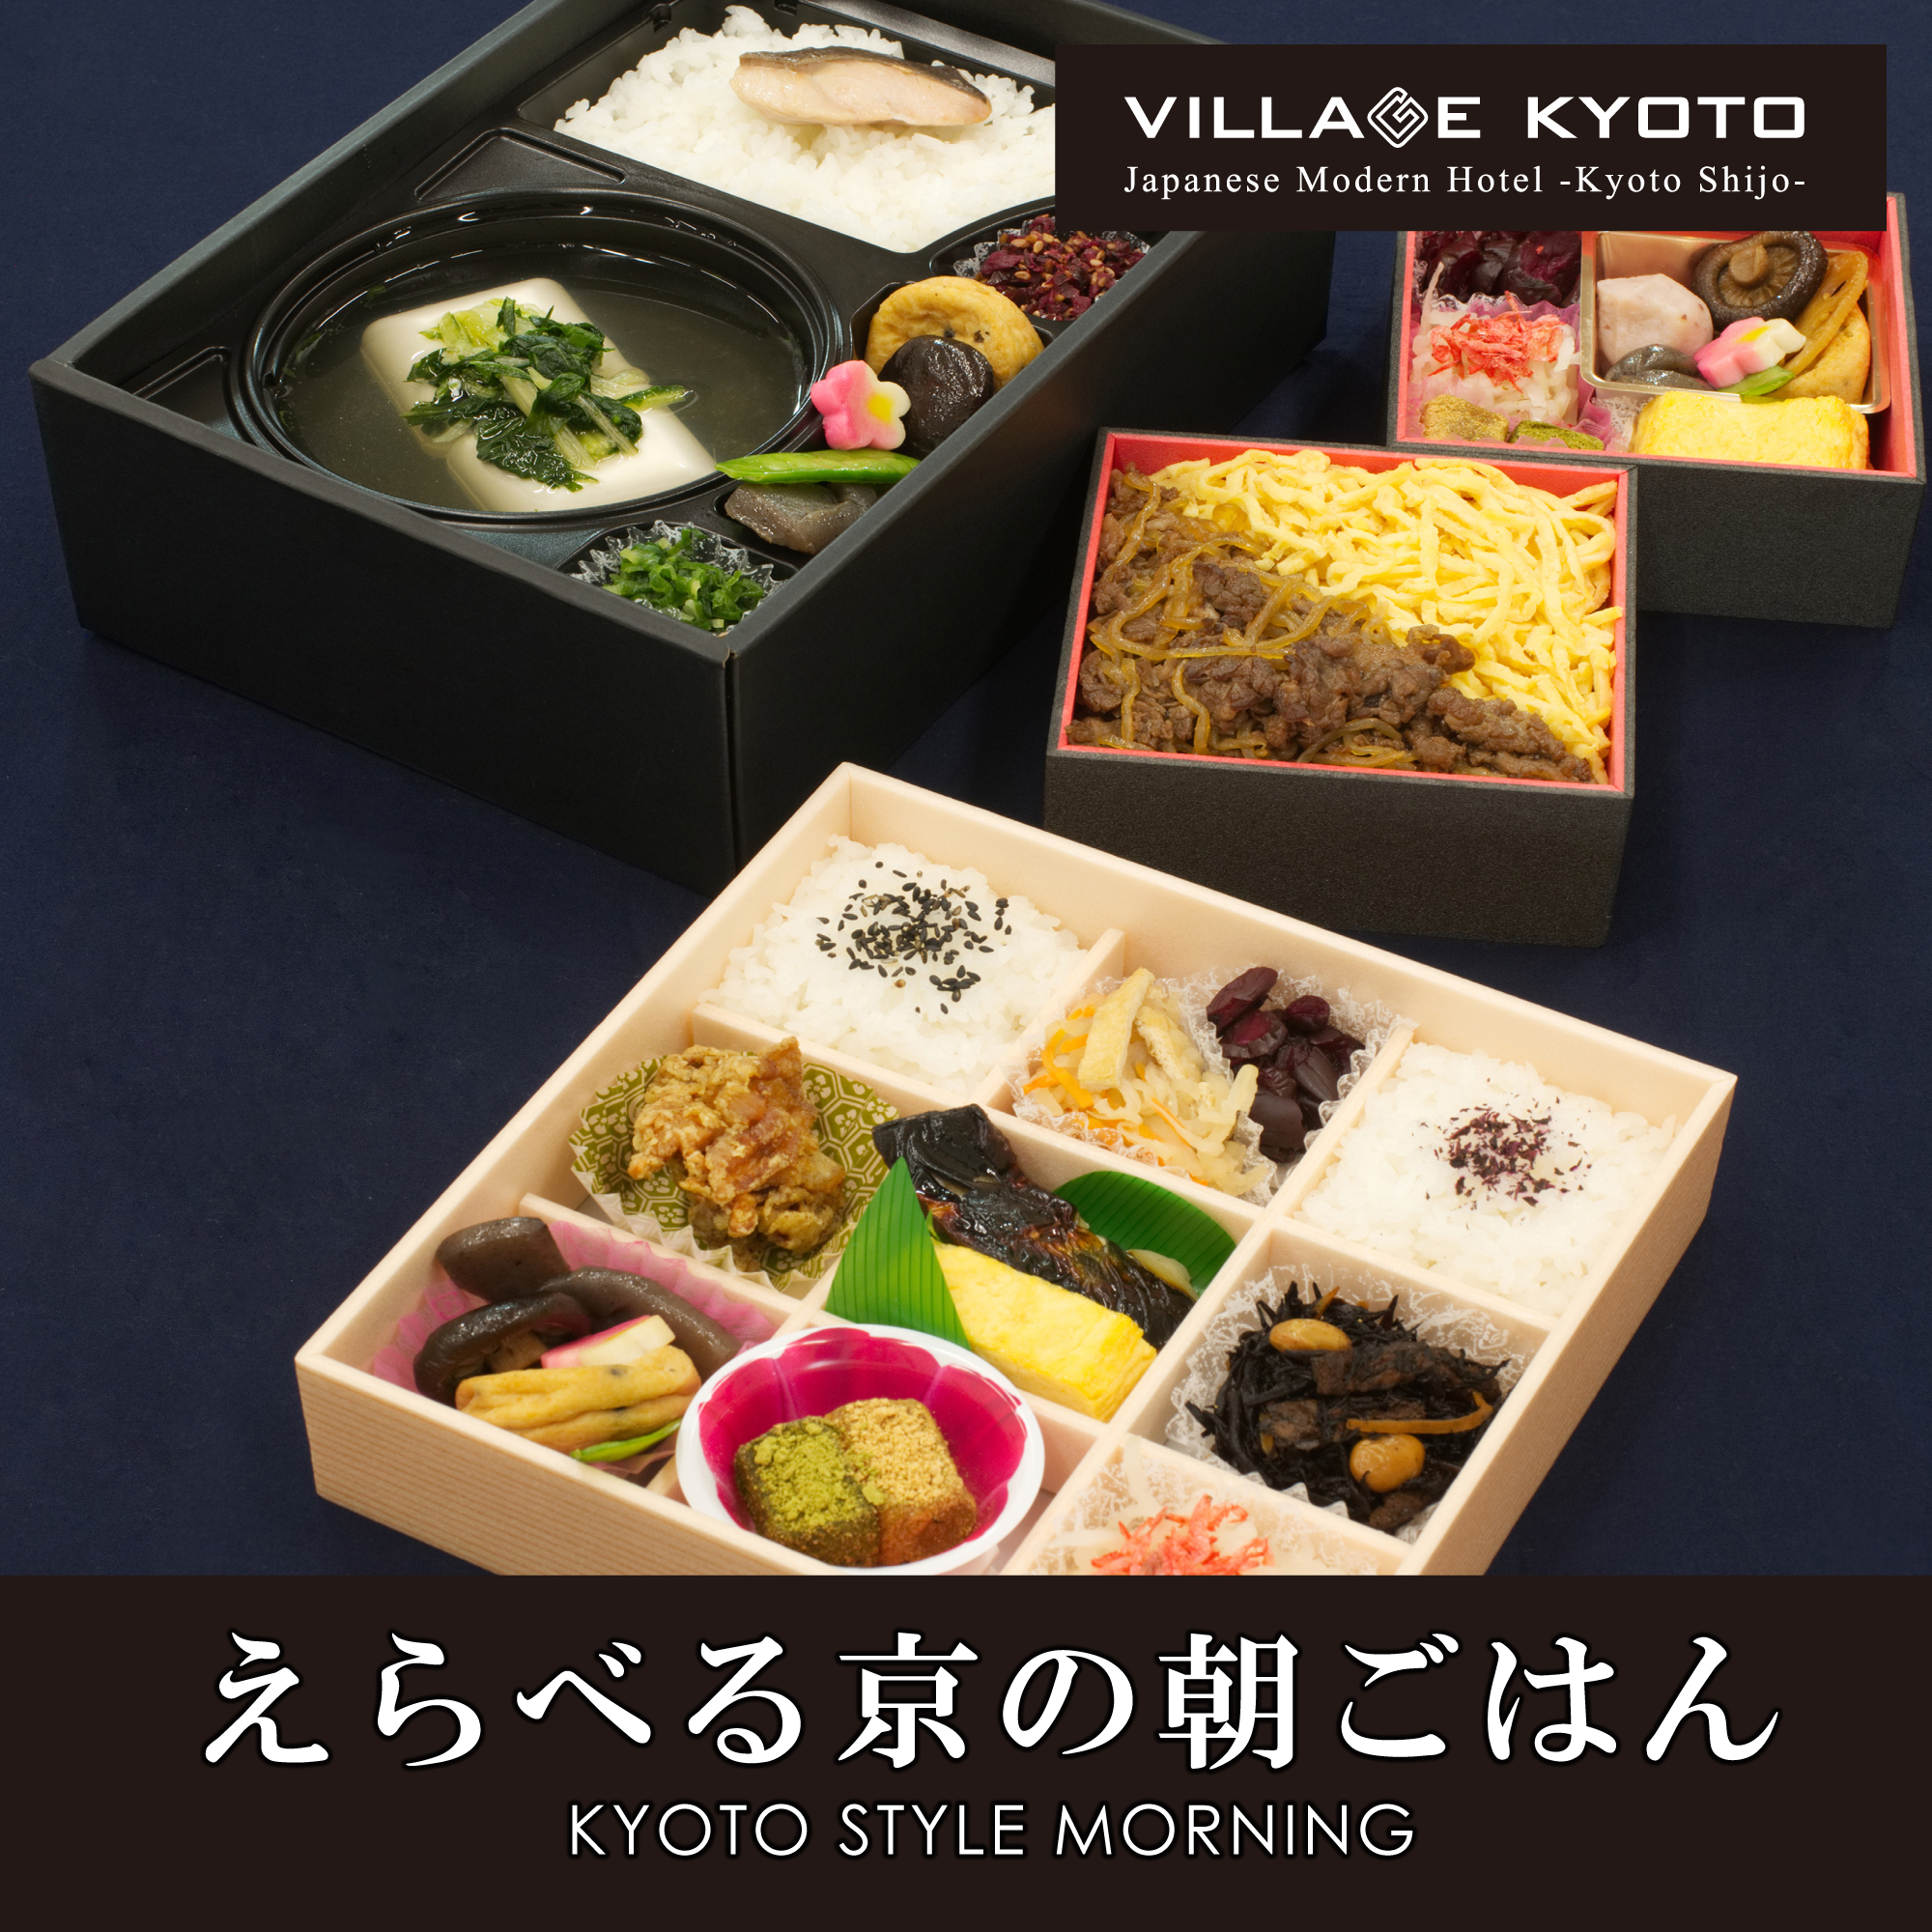 【朝食】京都老舗と特別コラボした京風和弁当をお部屋までお届け。ゆっくり客室でお召し上がりください